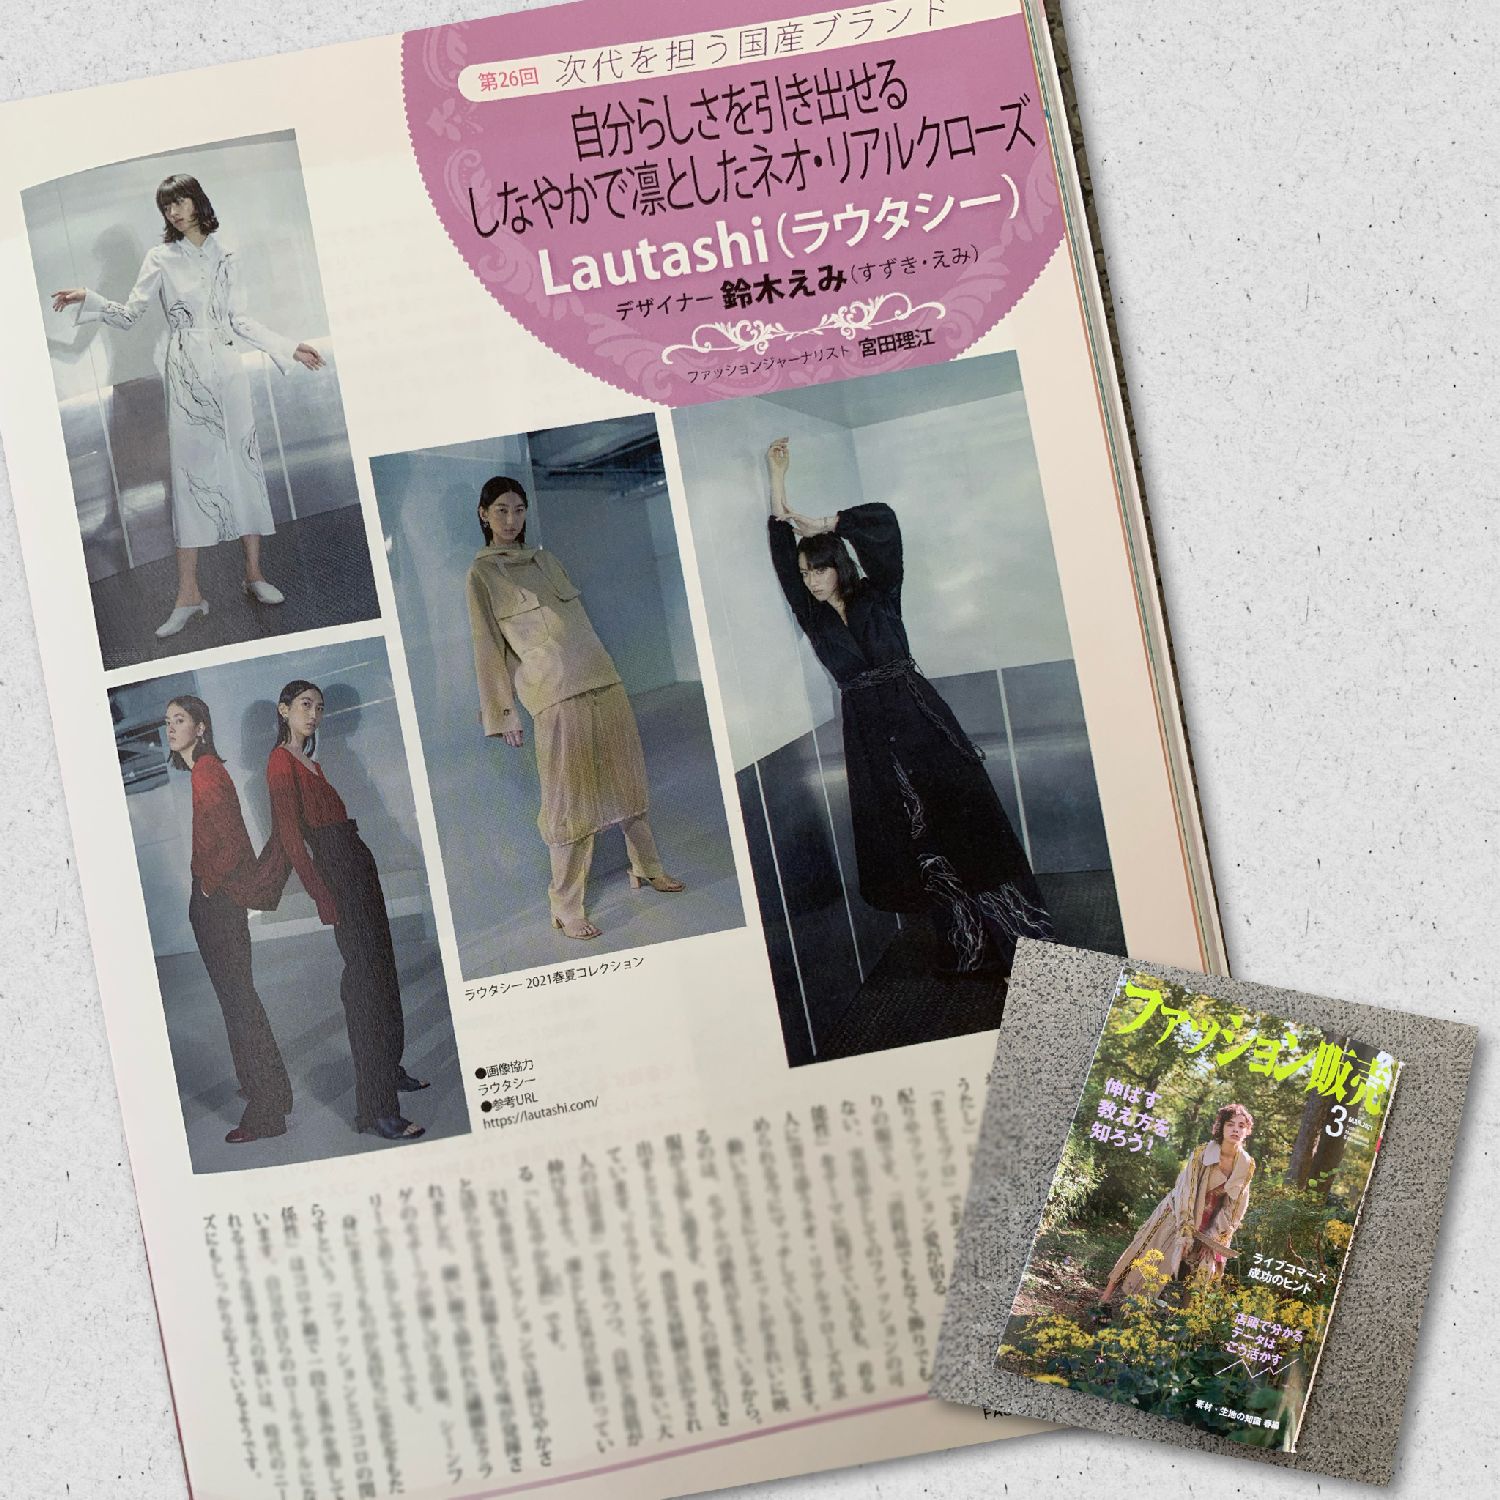 鈴木えみ氏が手がける「Lautashi（ラウタシー）」を紹介 月刊誌『ファッション販売』に掲載されました | fashion bible 宮田 理江